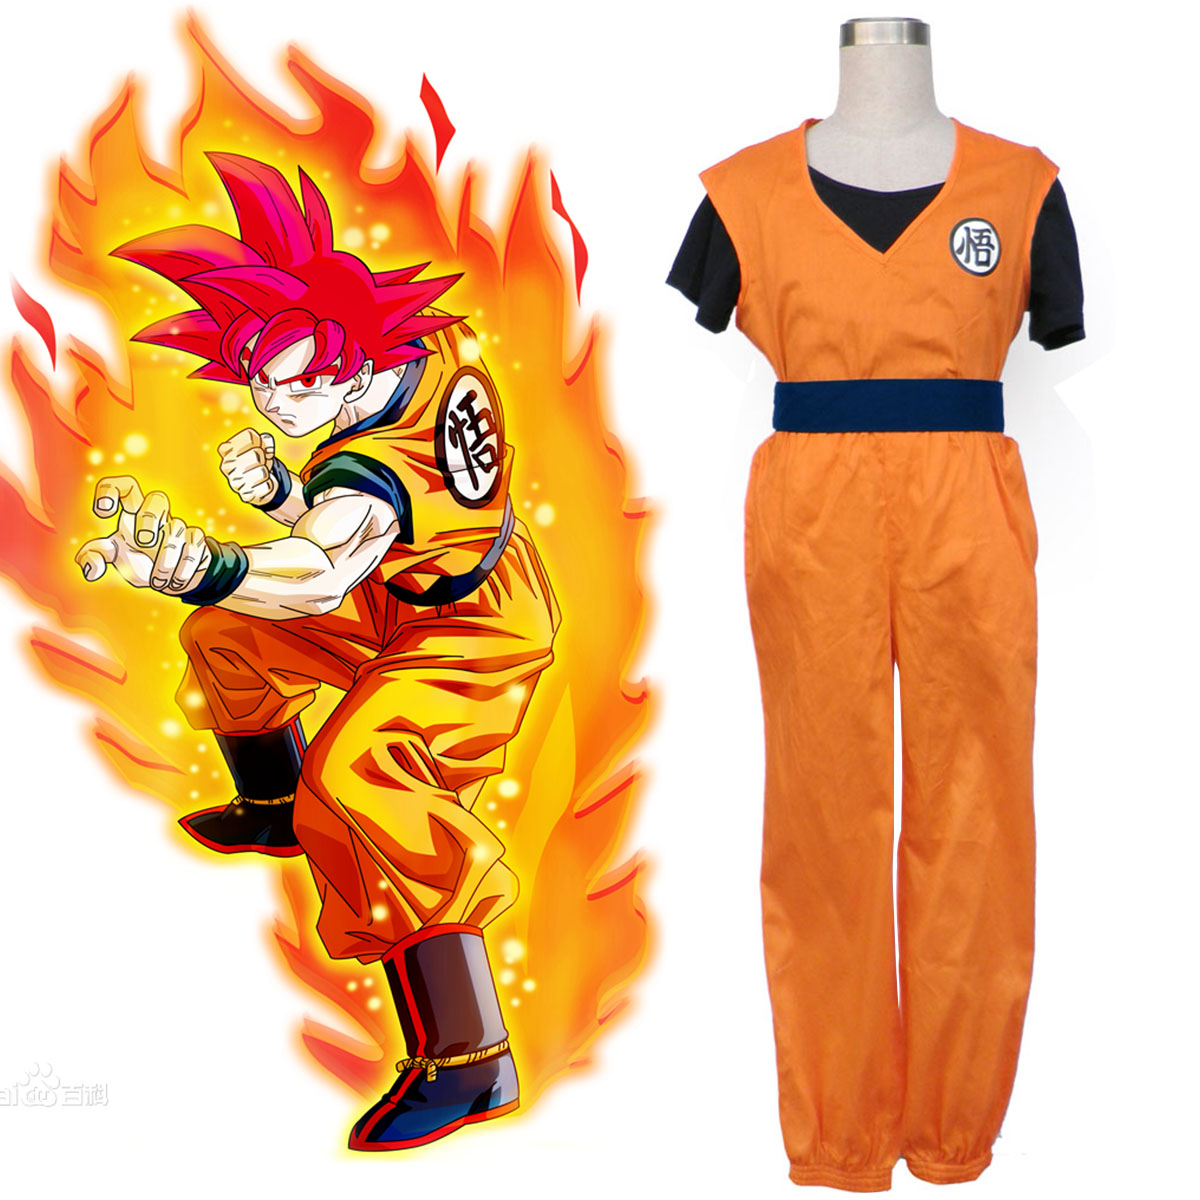 Disfraces Dragon Ball Son Goku 2 Cosplay España Tiendas